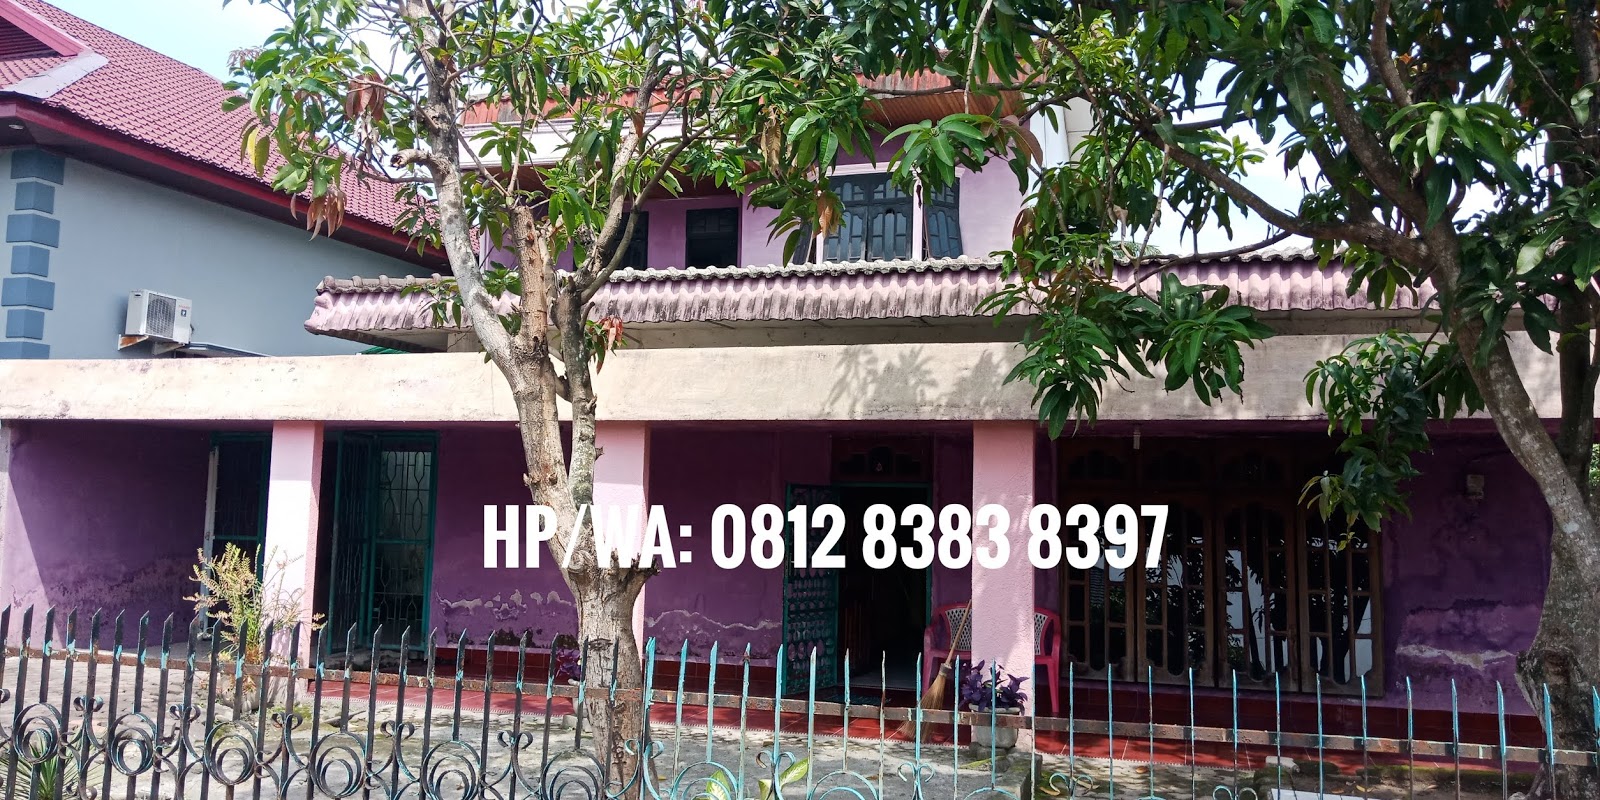  Jual  murah  rumah  dengan luas tanah  486 m2 di Jl Perwira 